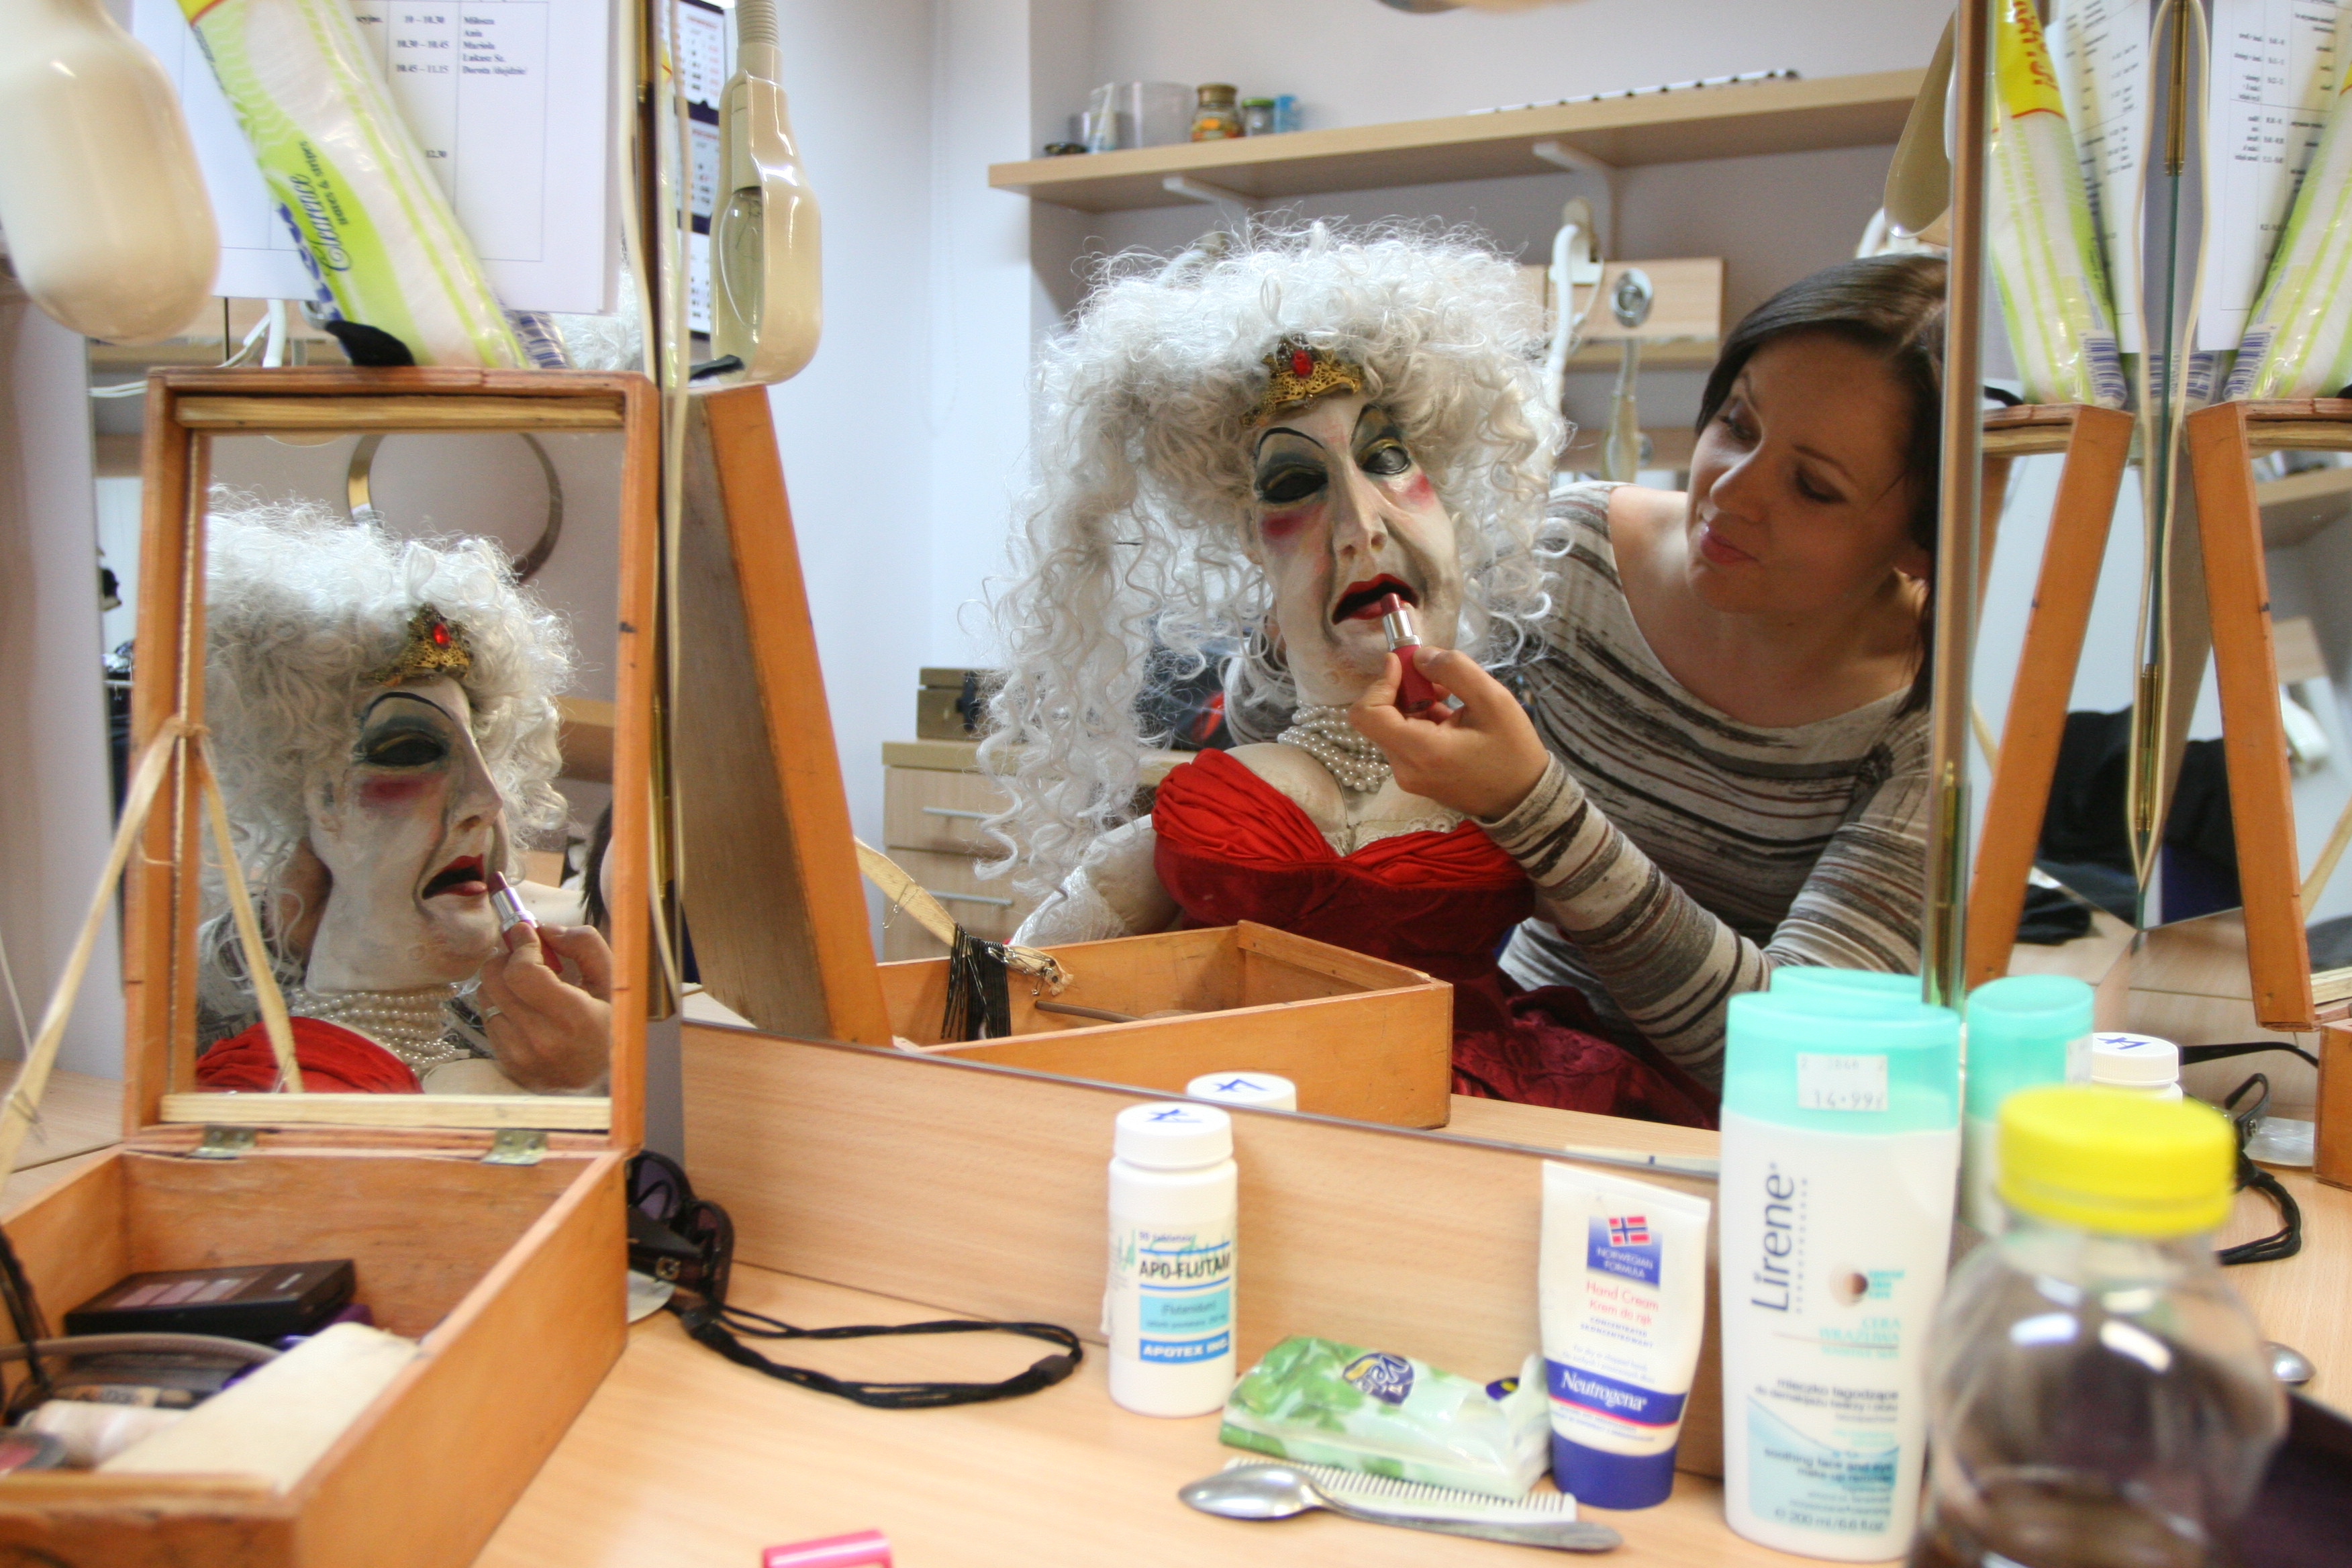 Aktorka siedzi w garderobie, przy biurku z lustrem. Na kolanach trzyma lalkę teatralną, której maluje usta szminką. Lalka odbija sie w lustrze.